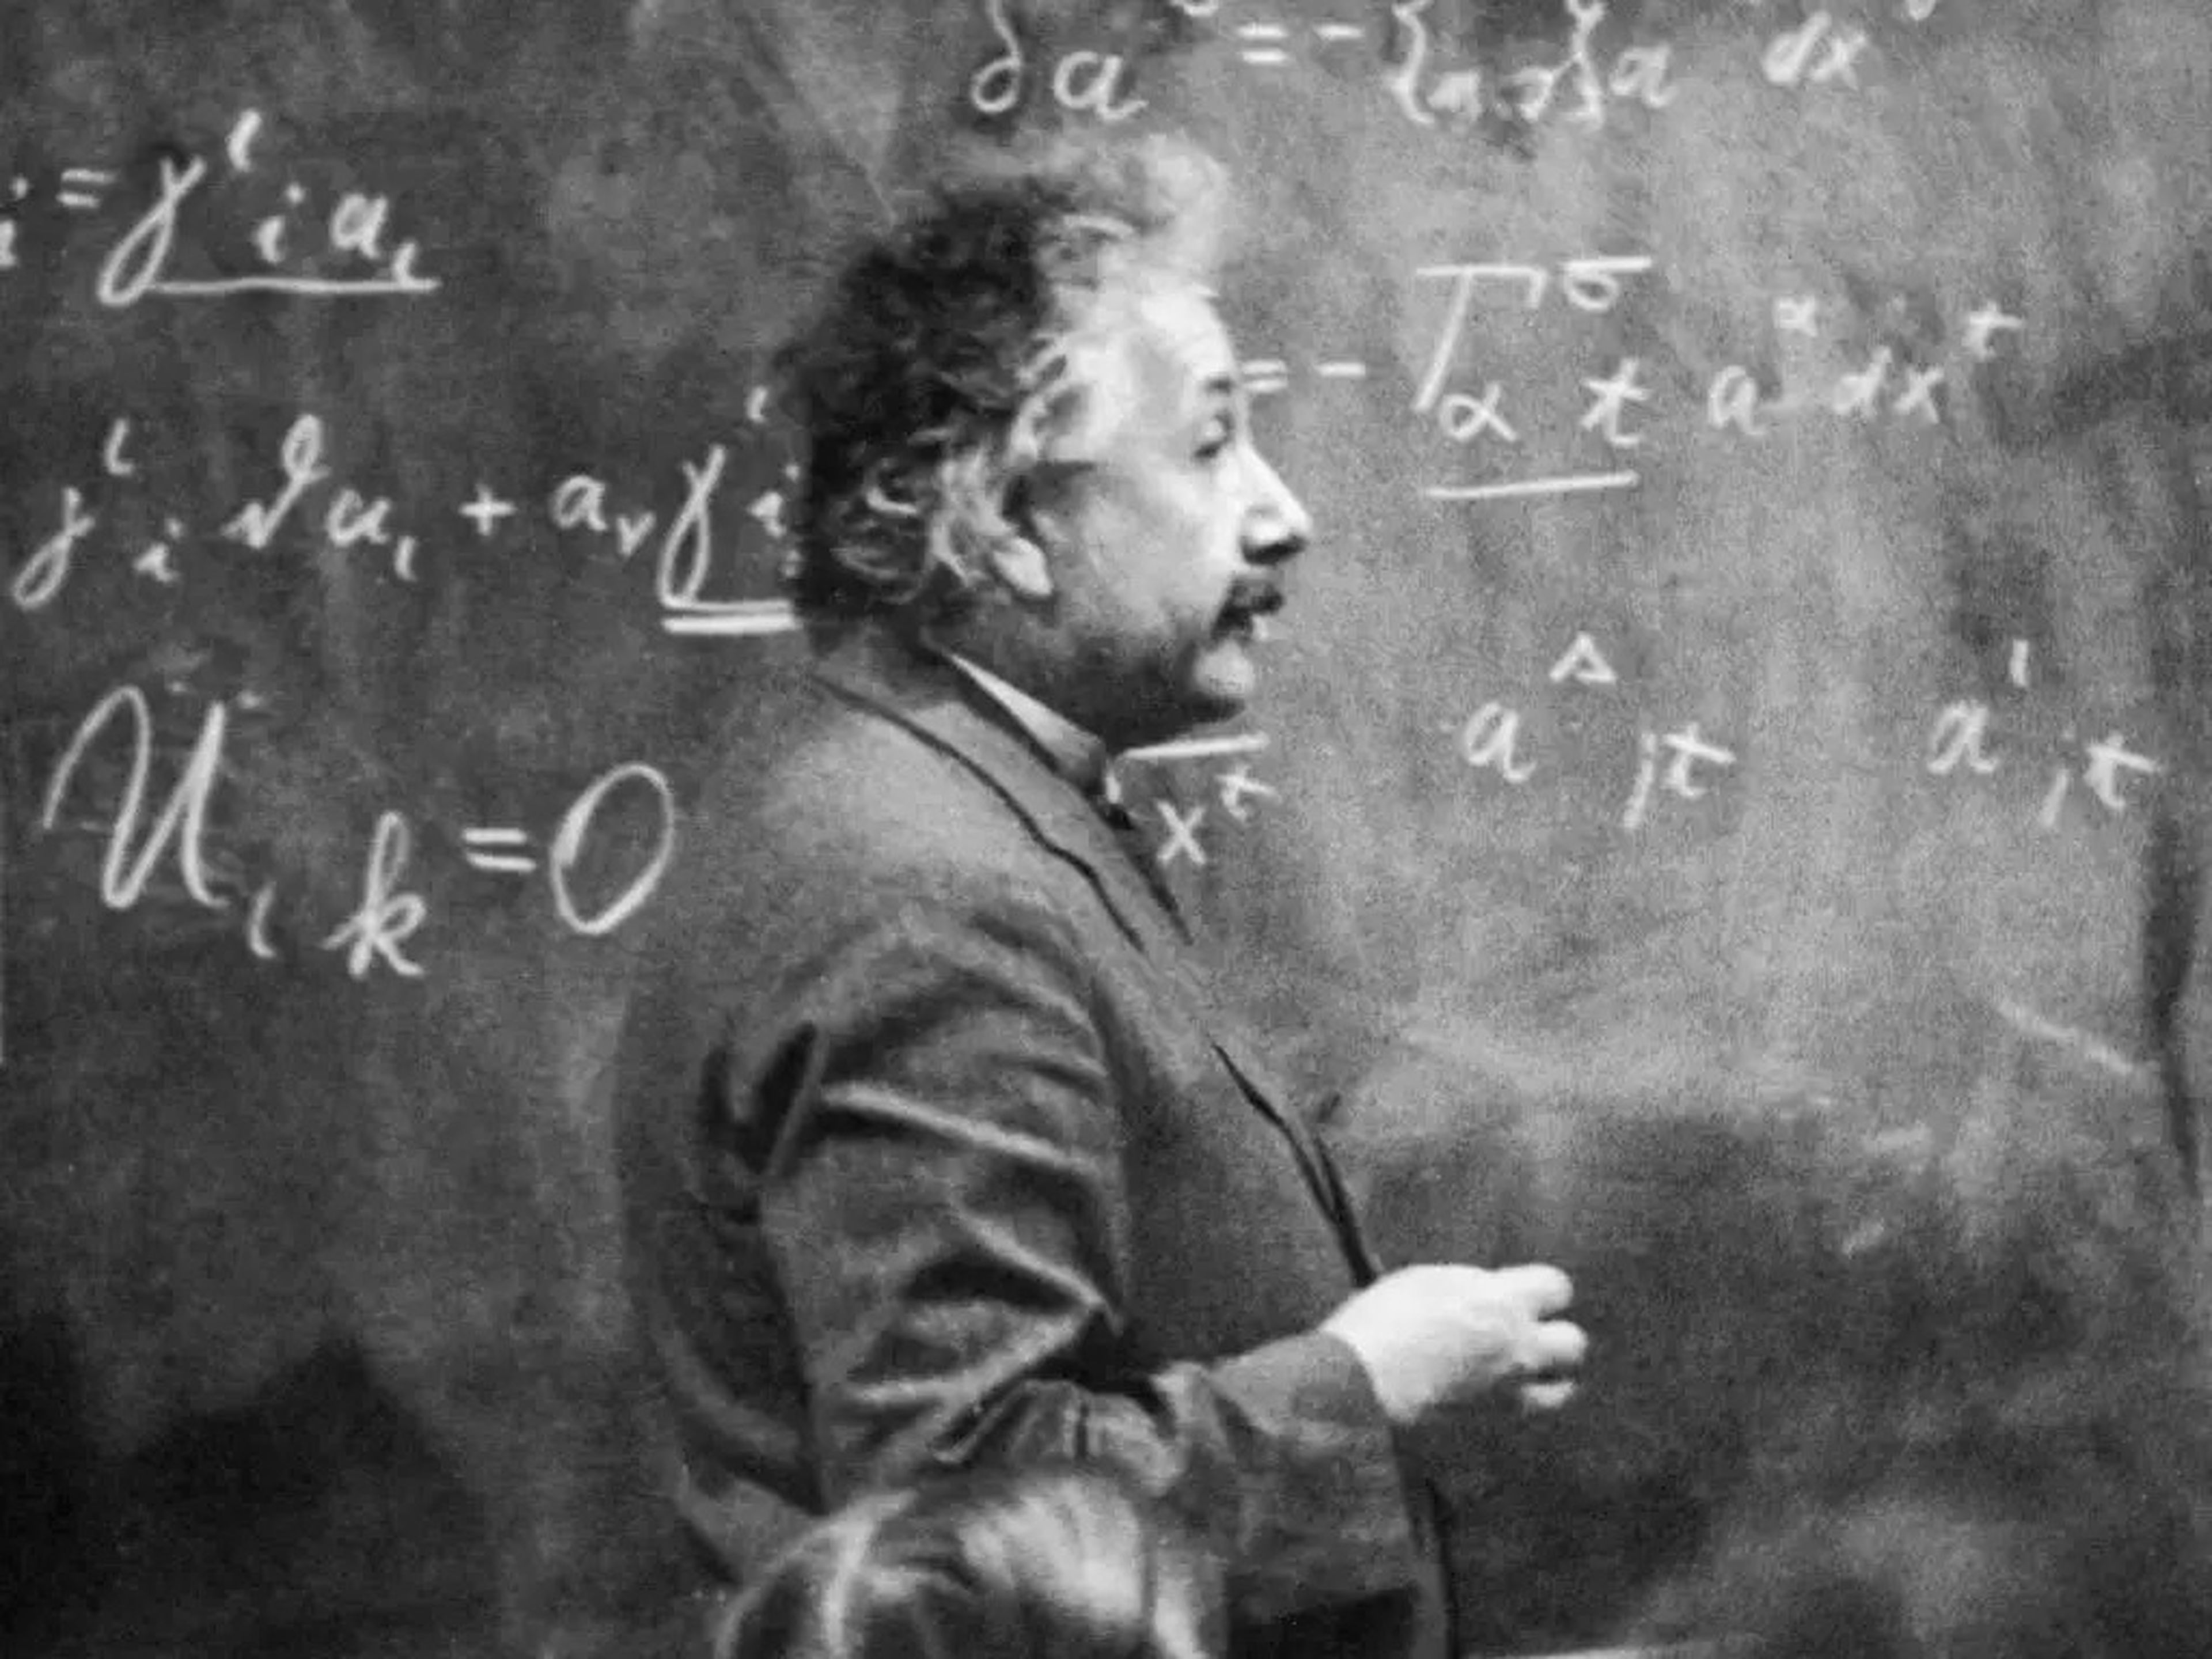 Photo of Albert Einstein in front of a chalkboard.